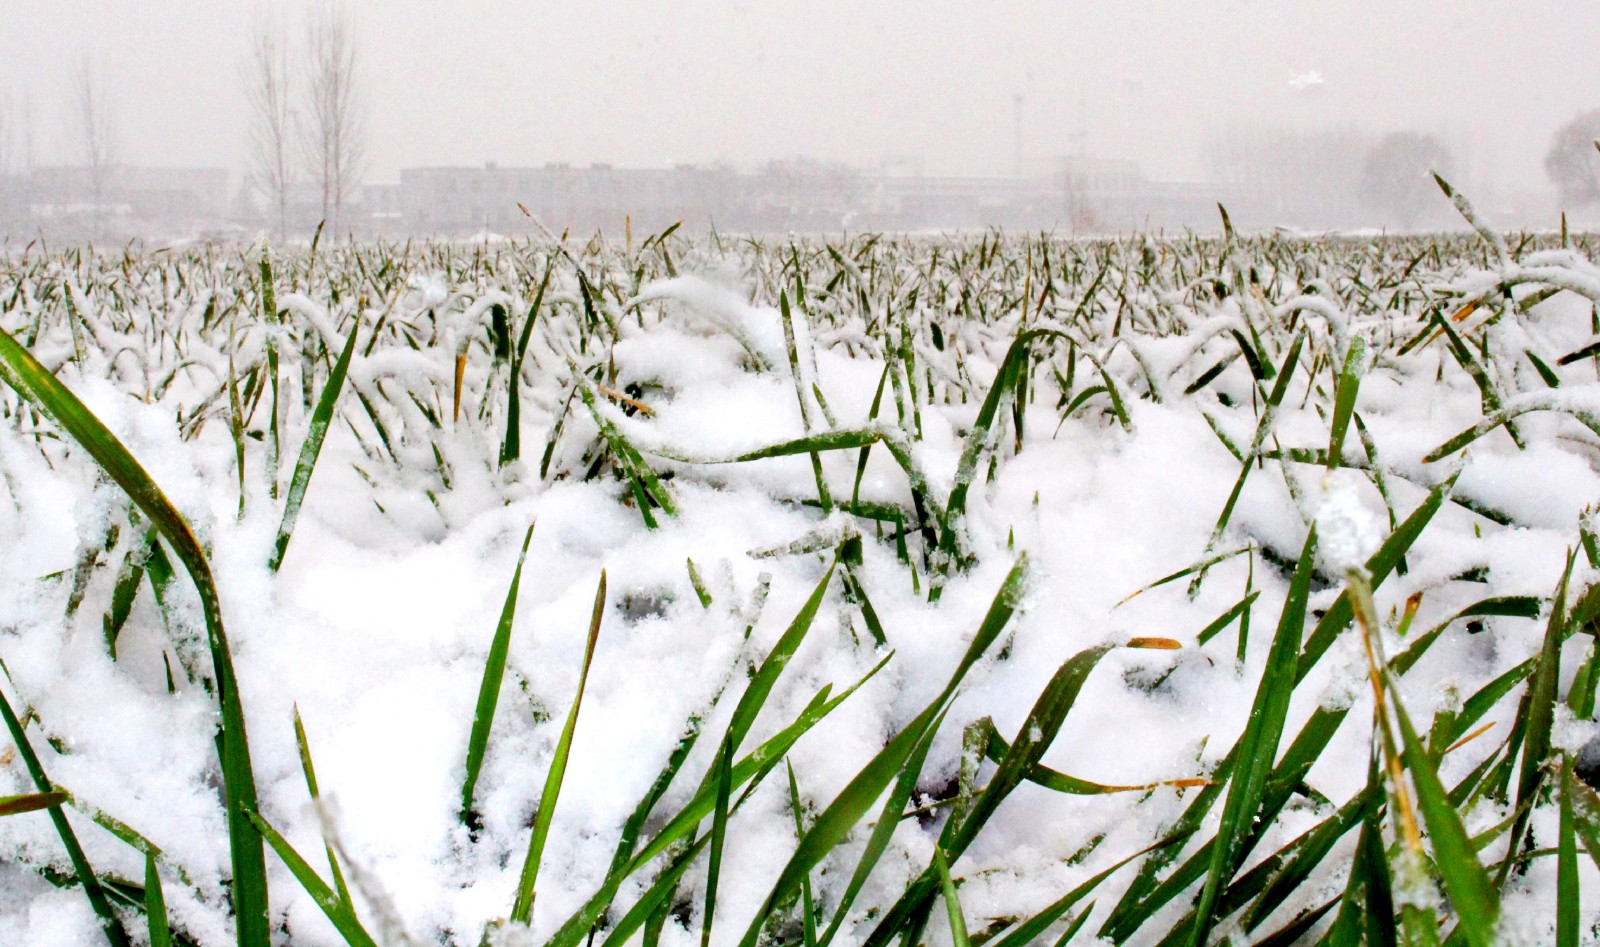 薛城区邹坞镇33万亩冬小麦喜盖雪被